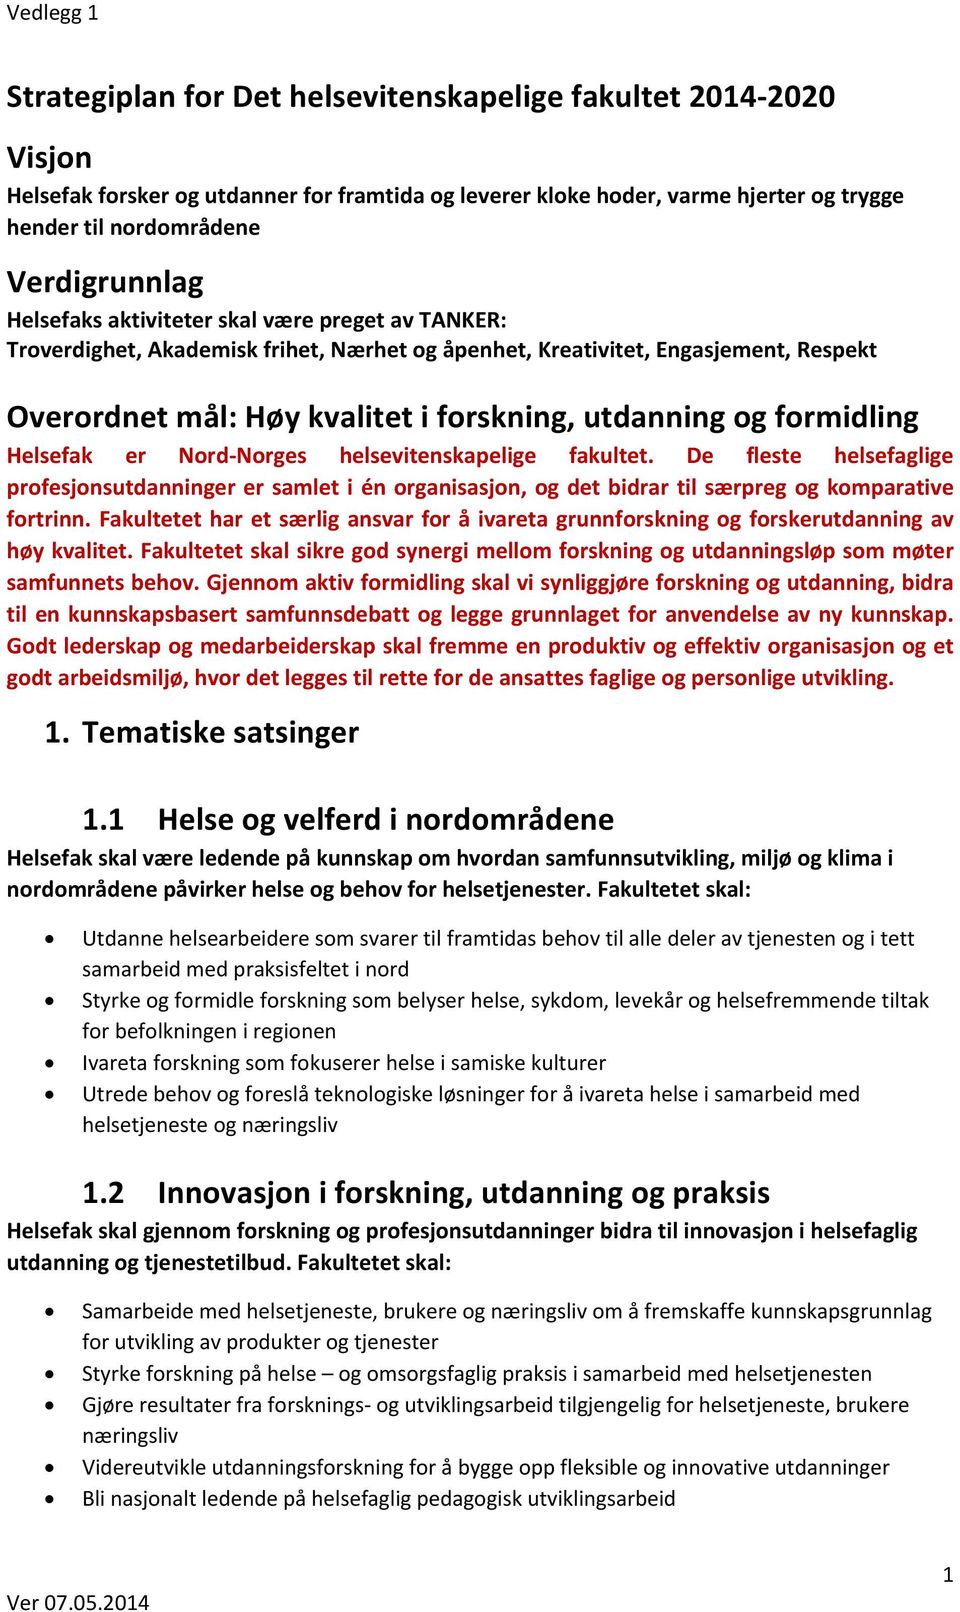 formidling Helsefak er Nord-Norges helsevitenskapelige fakultet. De fleste helsefaglige profesjonsutdanninger er samlet i én organisasjon, og det bidrar til særpreg og komparative fortrinn.